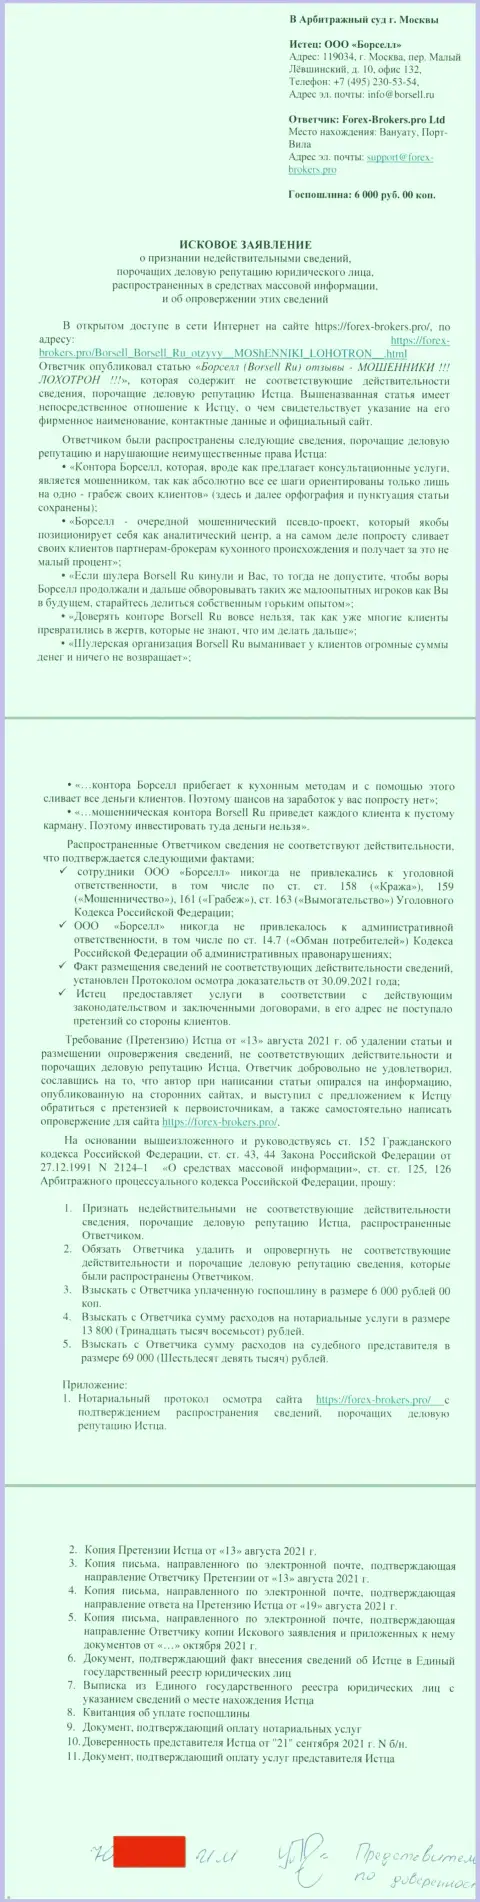 Непосредственно исковое заявление в суд мошенников Borsell Ru